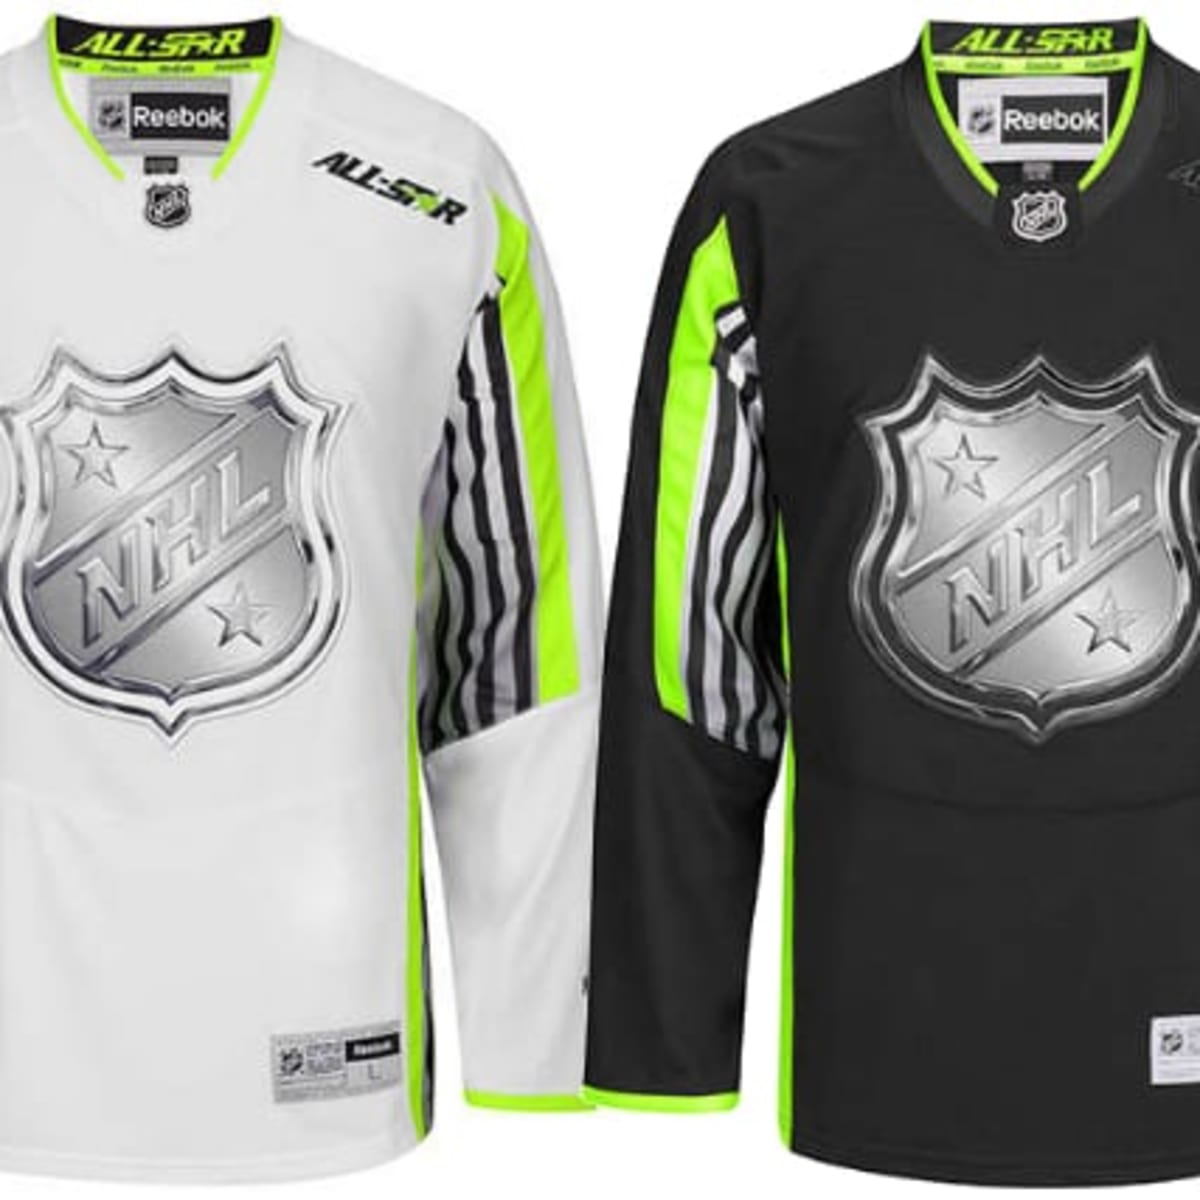 Some NHL Holohockey jersey ideas I had. : r/Hololive